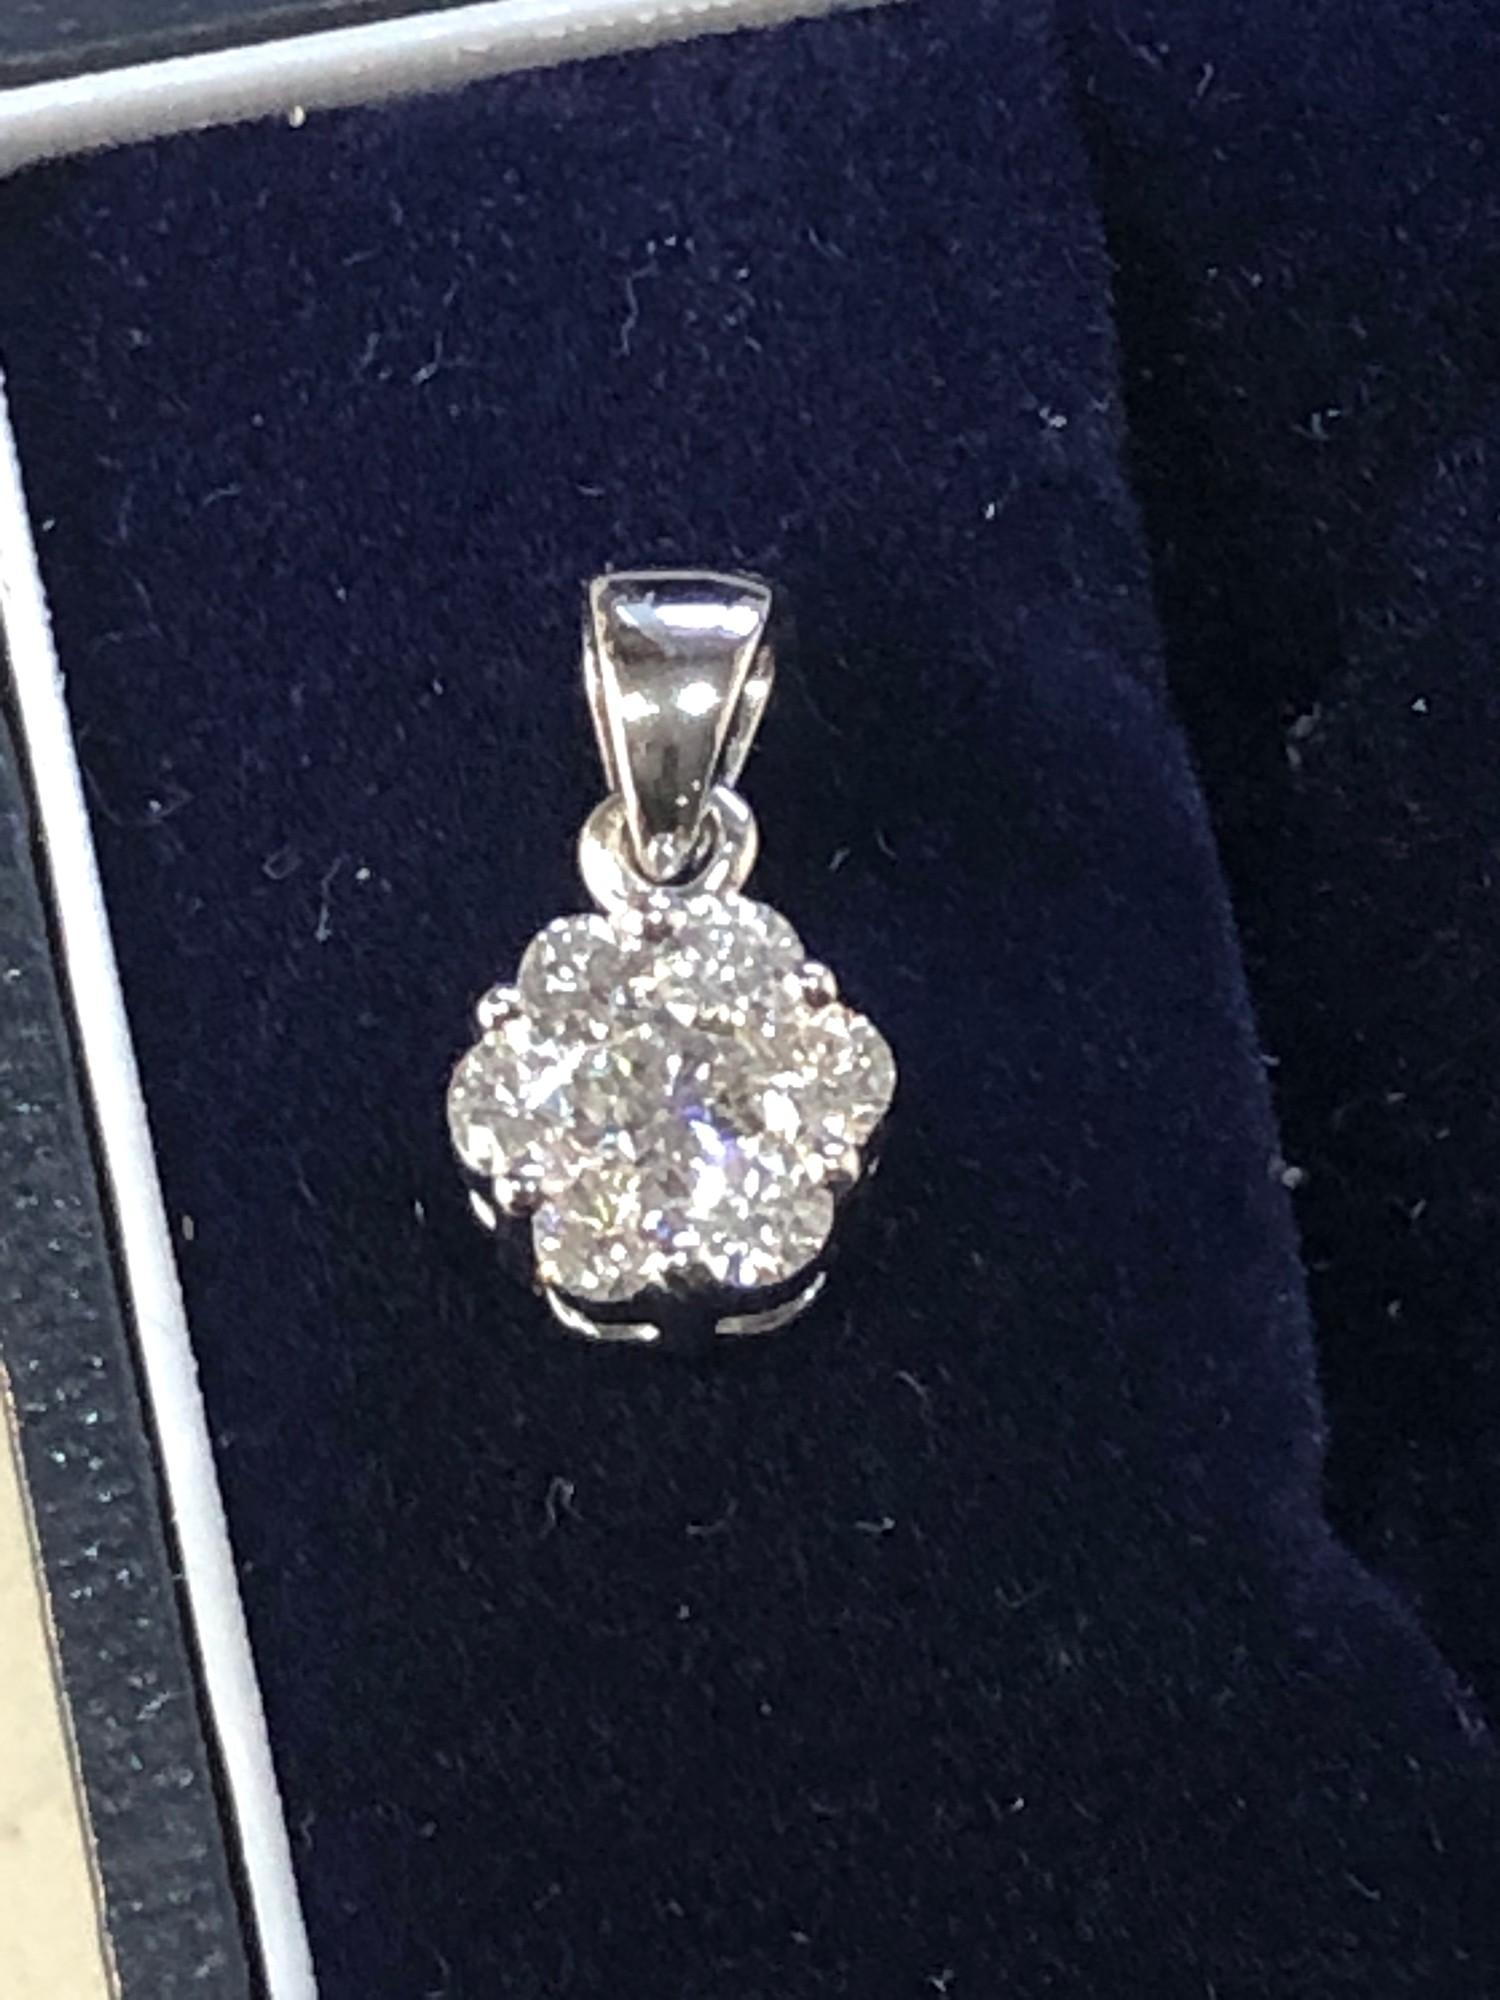 Designer Rhapsody platinum and diamond pendant containing seven diamonds round brilliant gem - Image 3 of 4